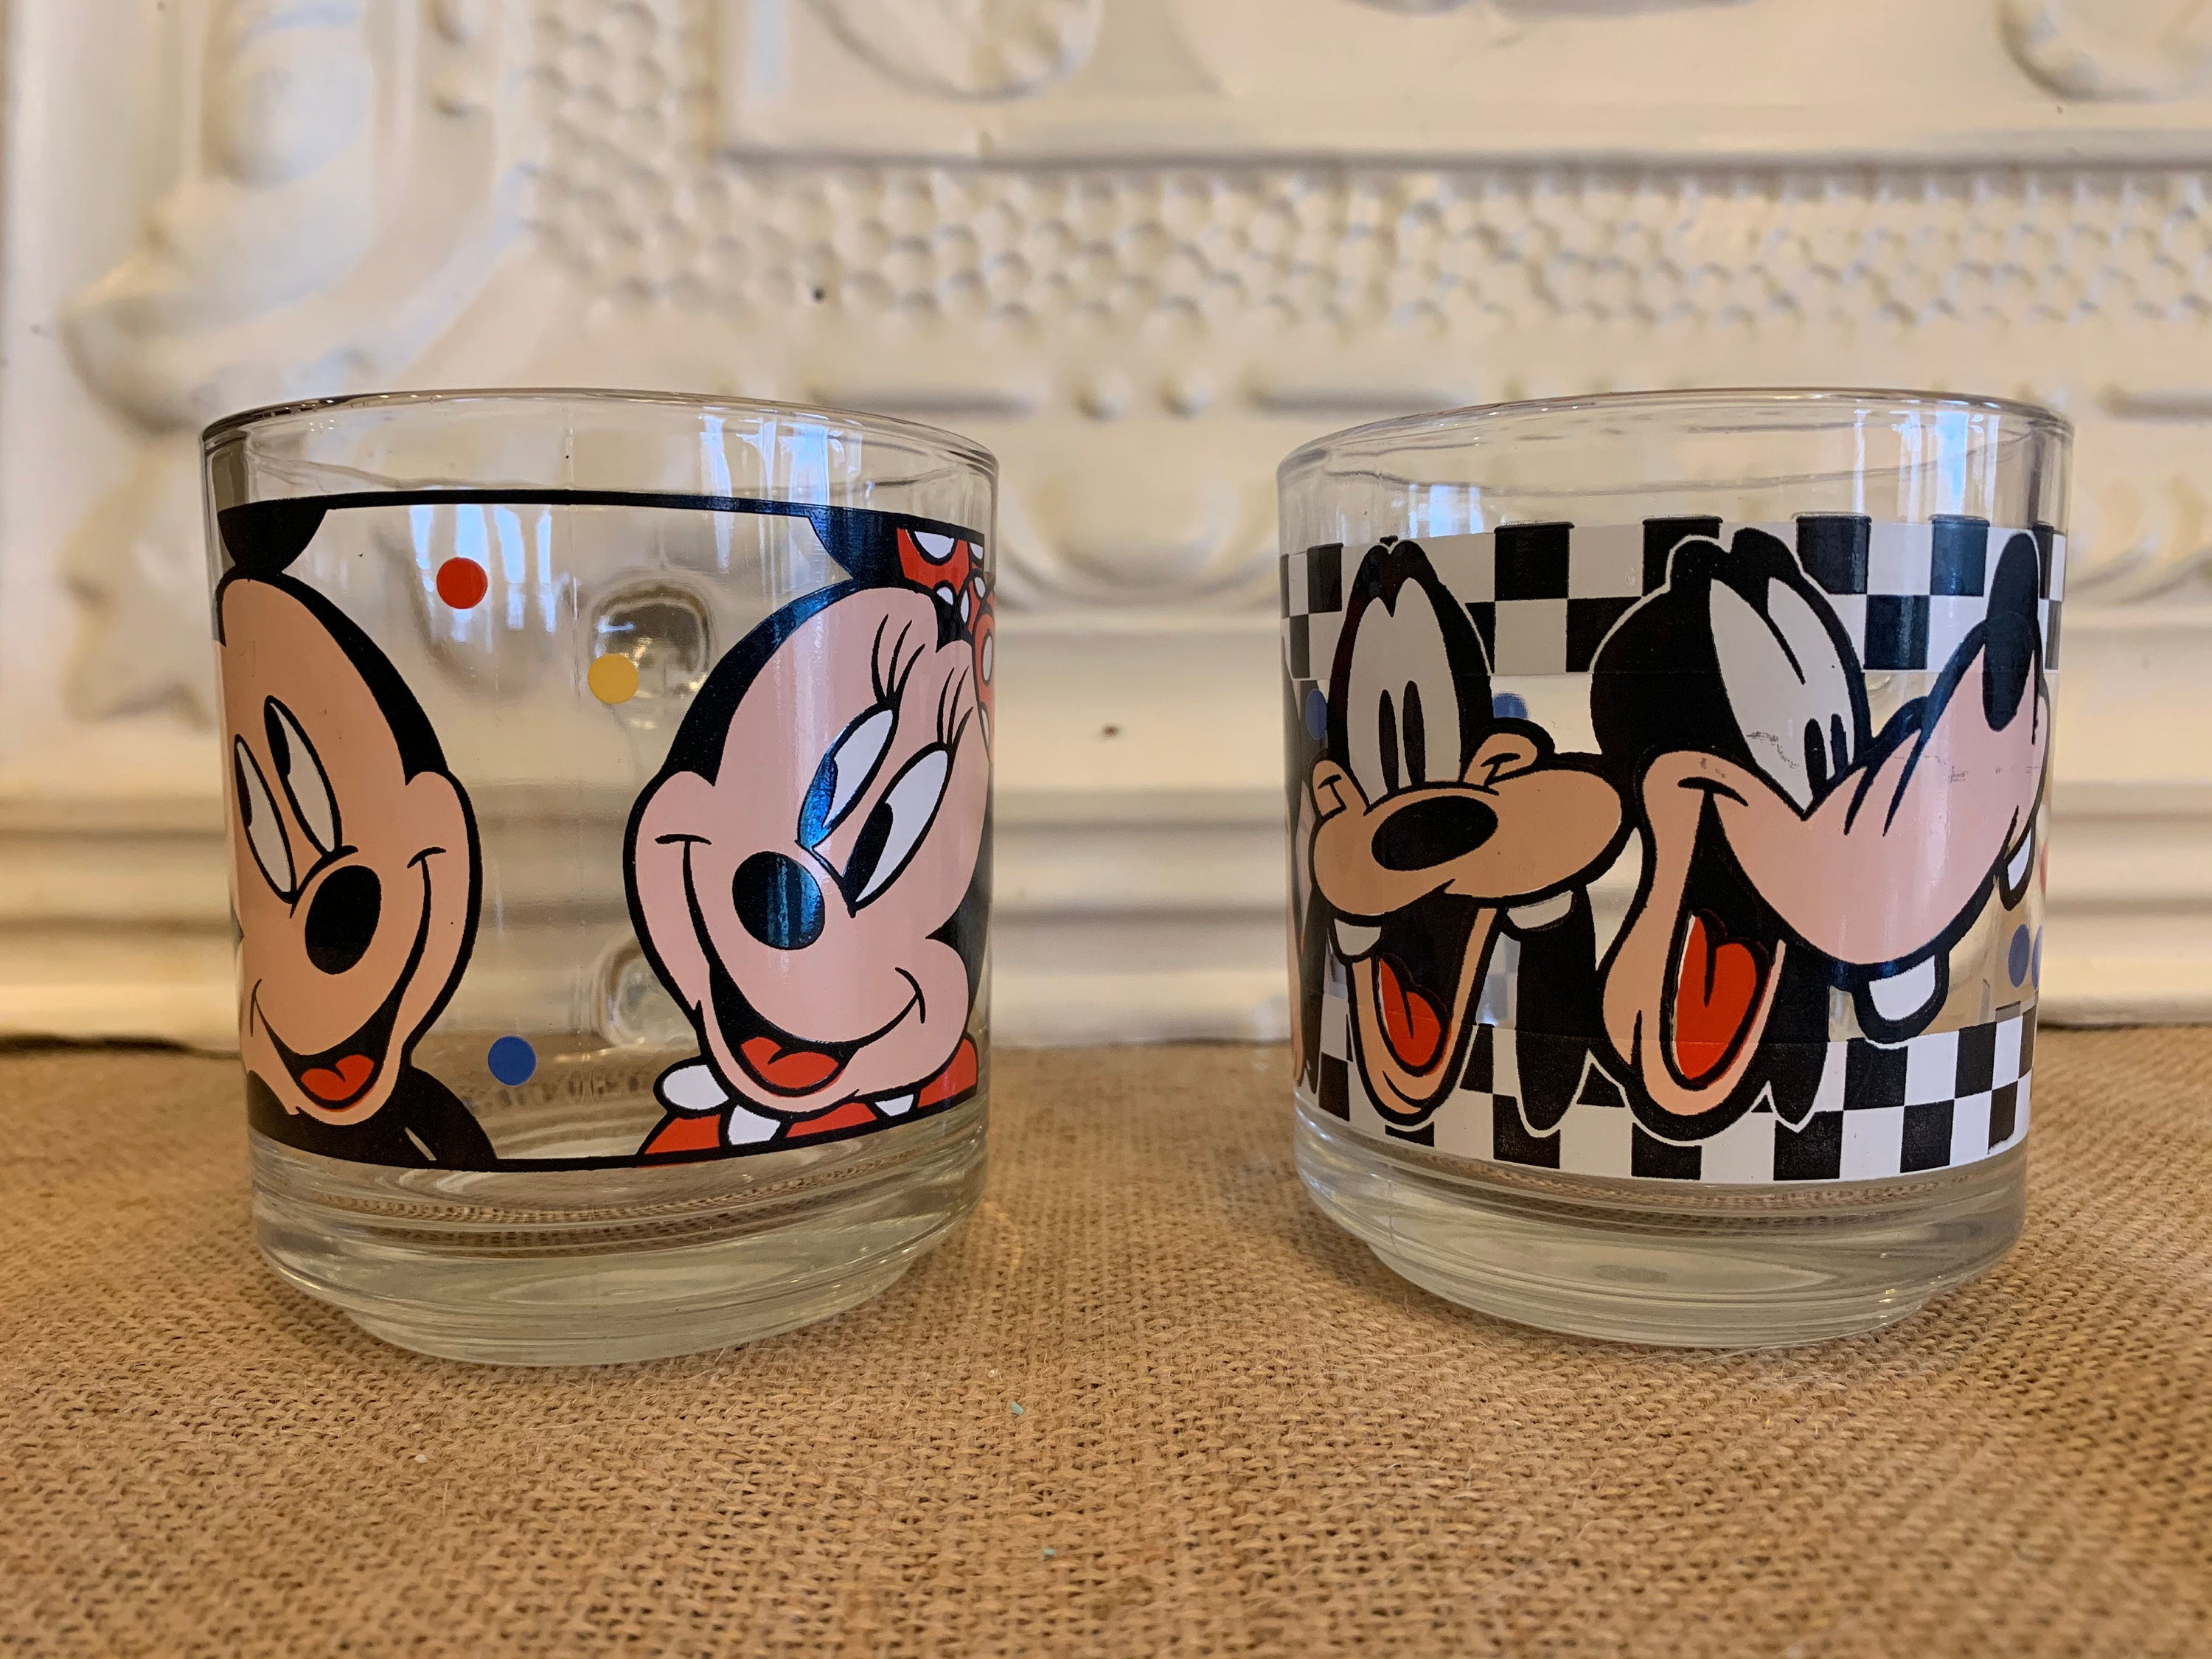 Mickey Mouse Vintage Metal Cup - ID: novdisneyana20004